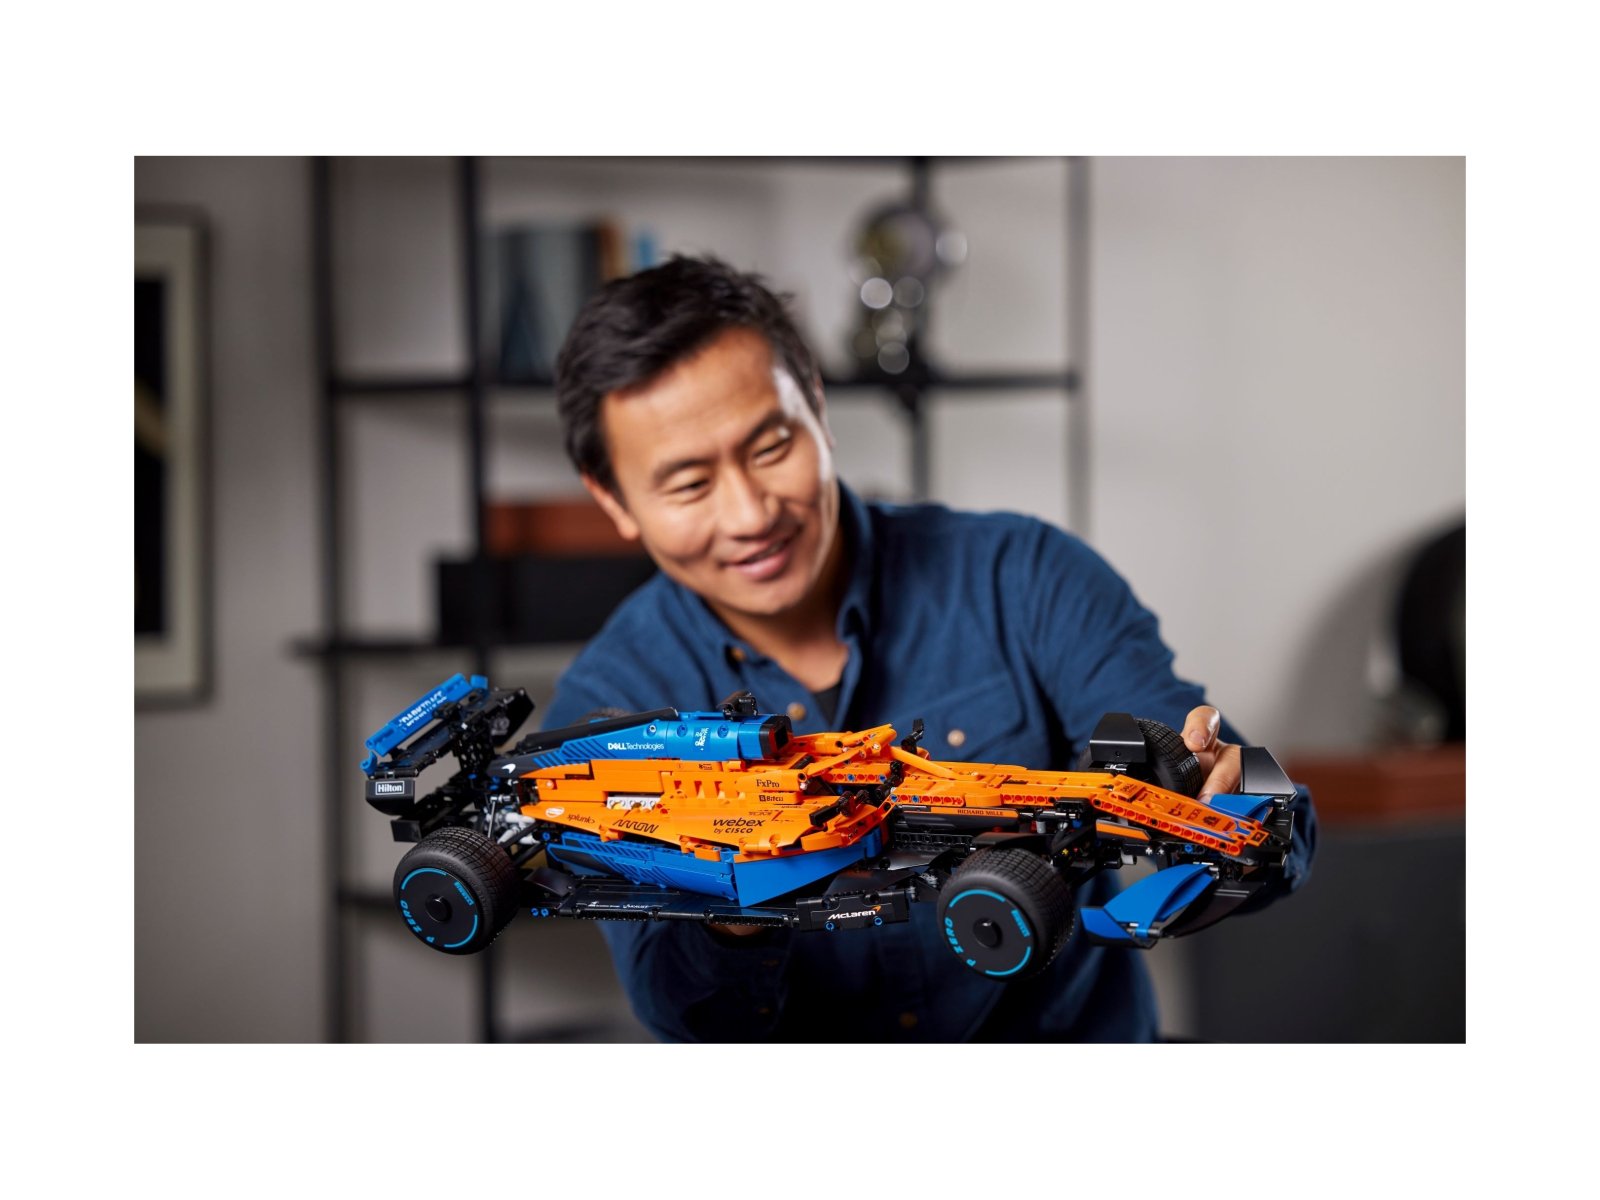 LEGO 42141 Samochód wyścigowy McLaren Formula 1™